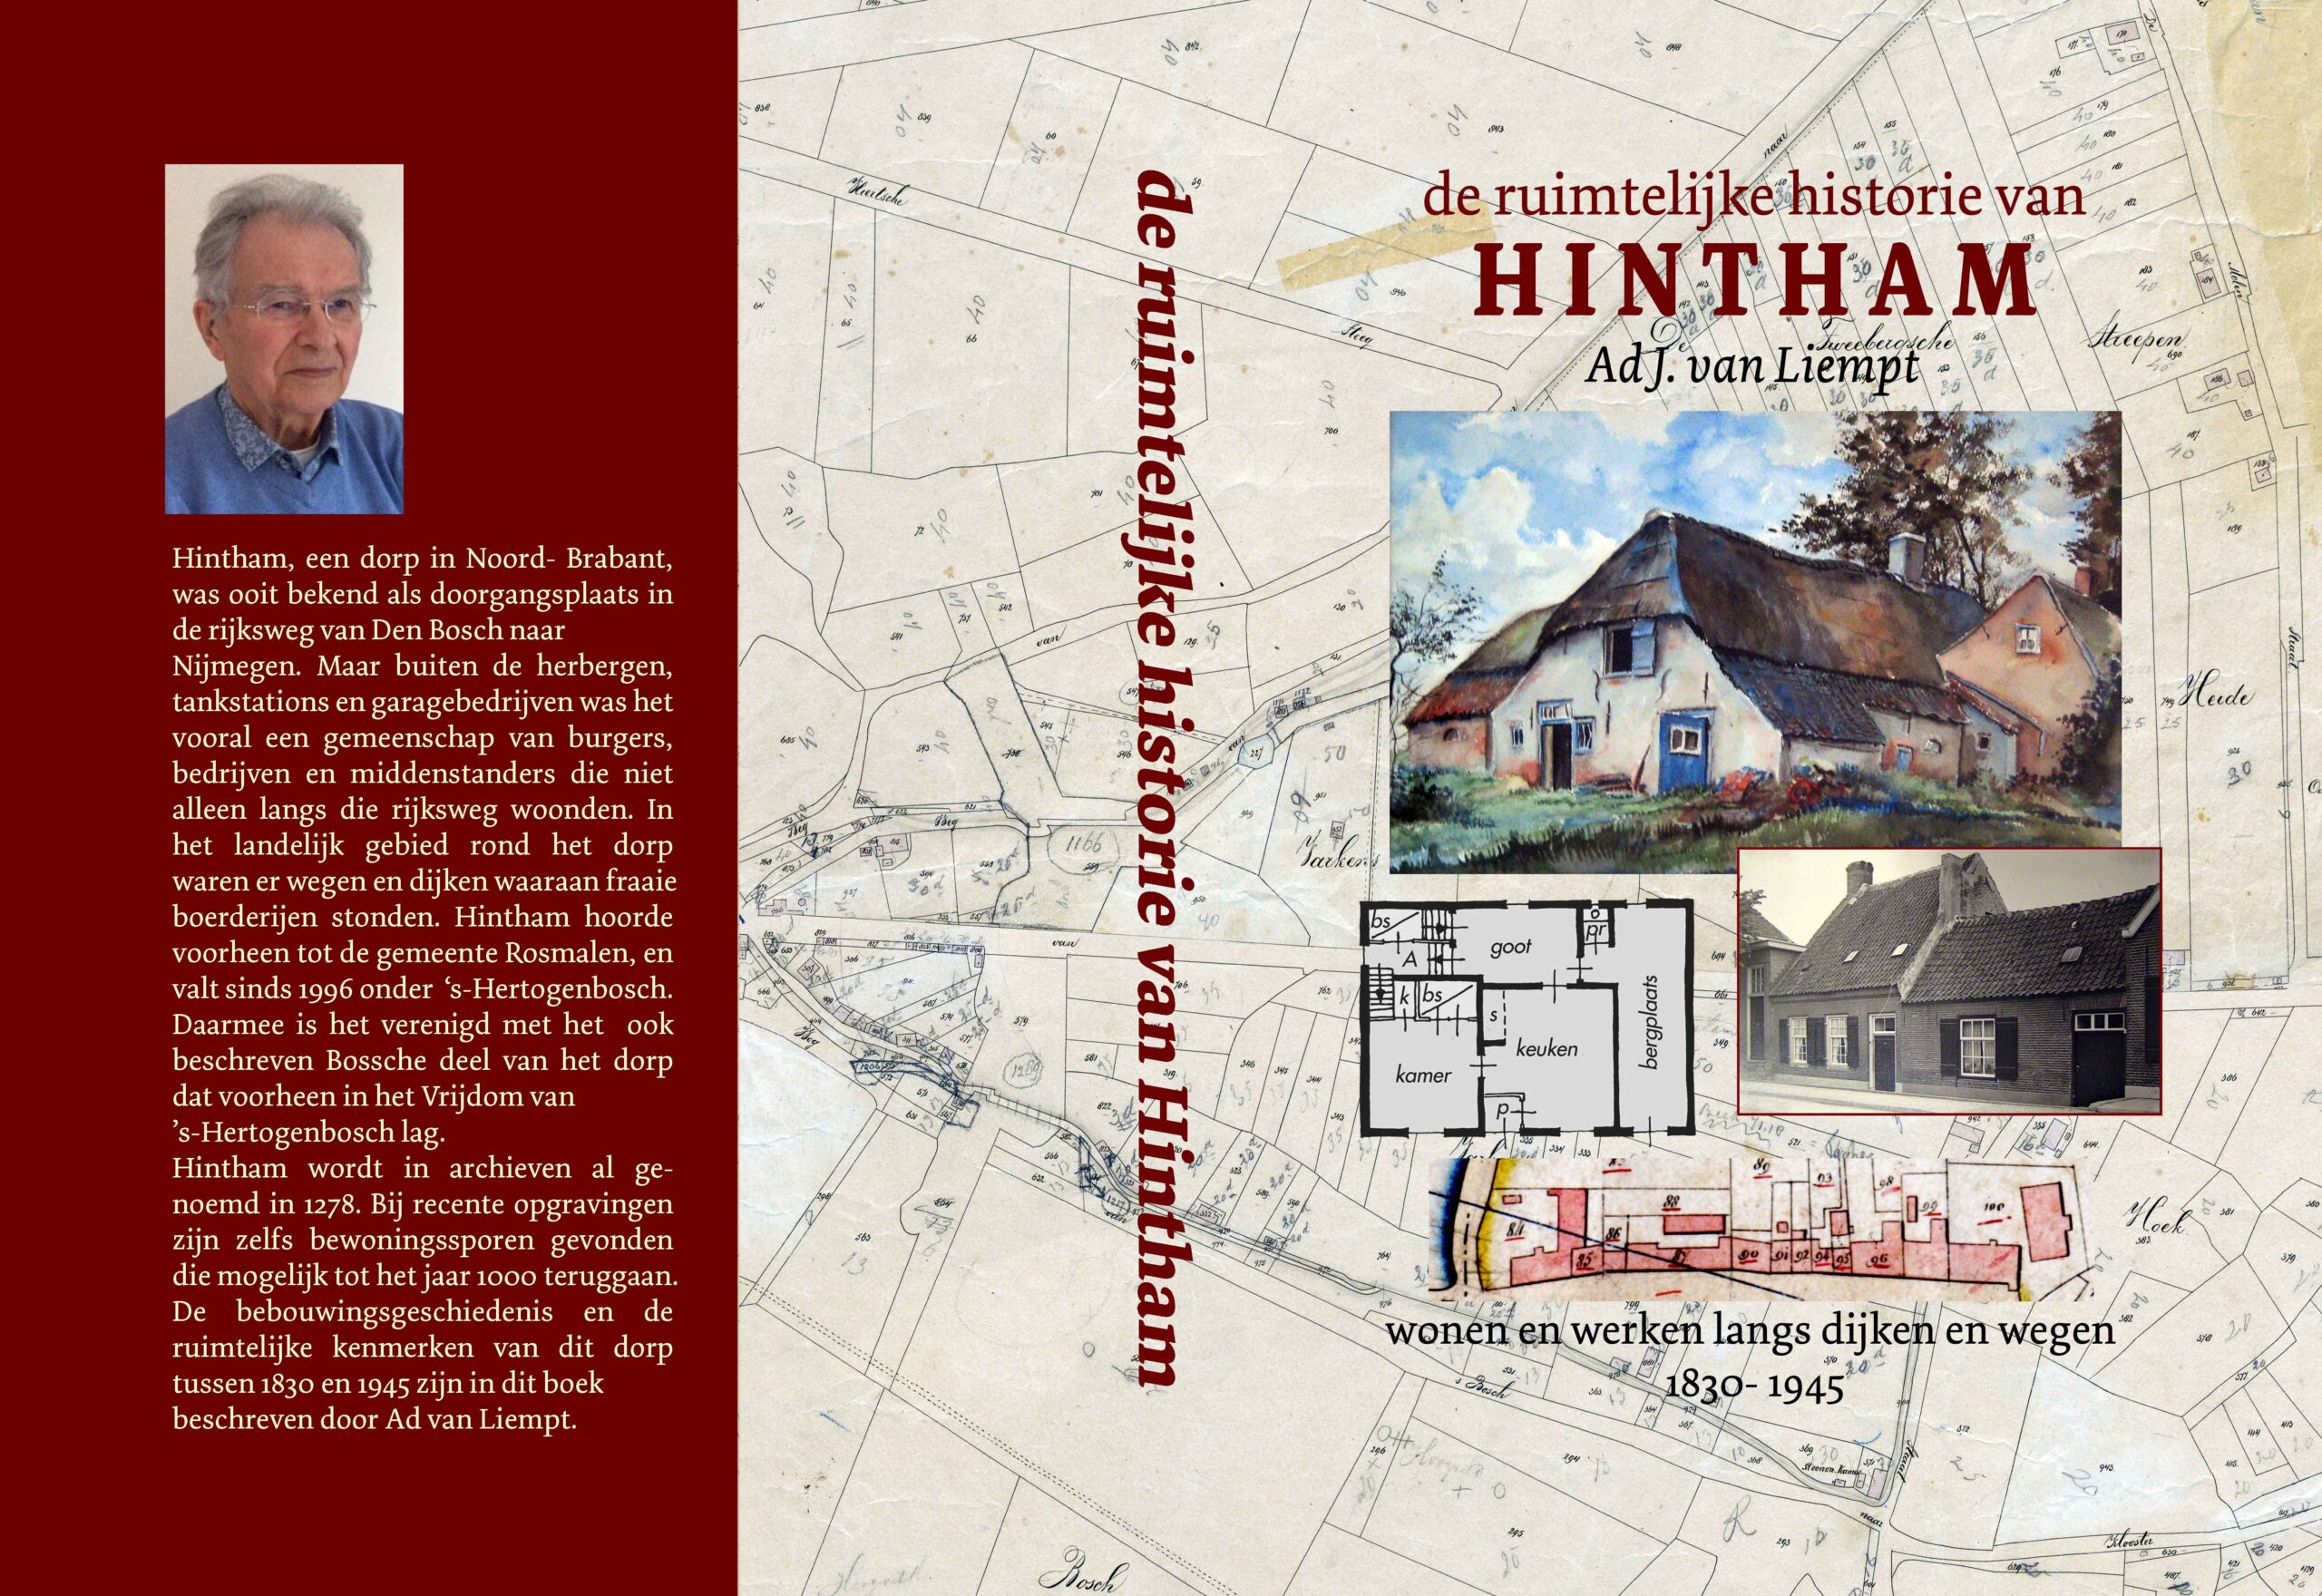 De ruimtelijke historie van HINTHAM